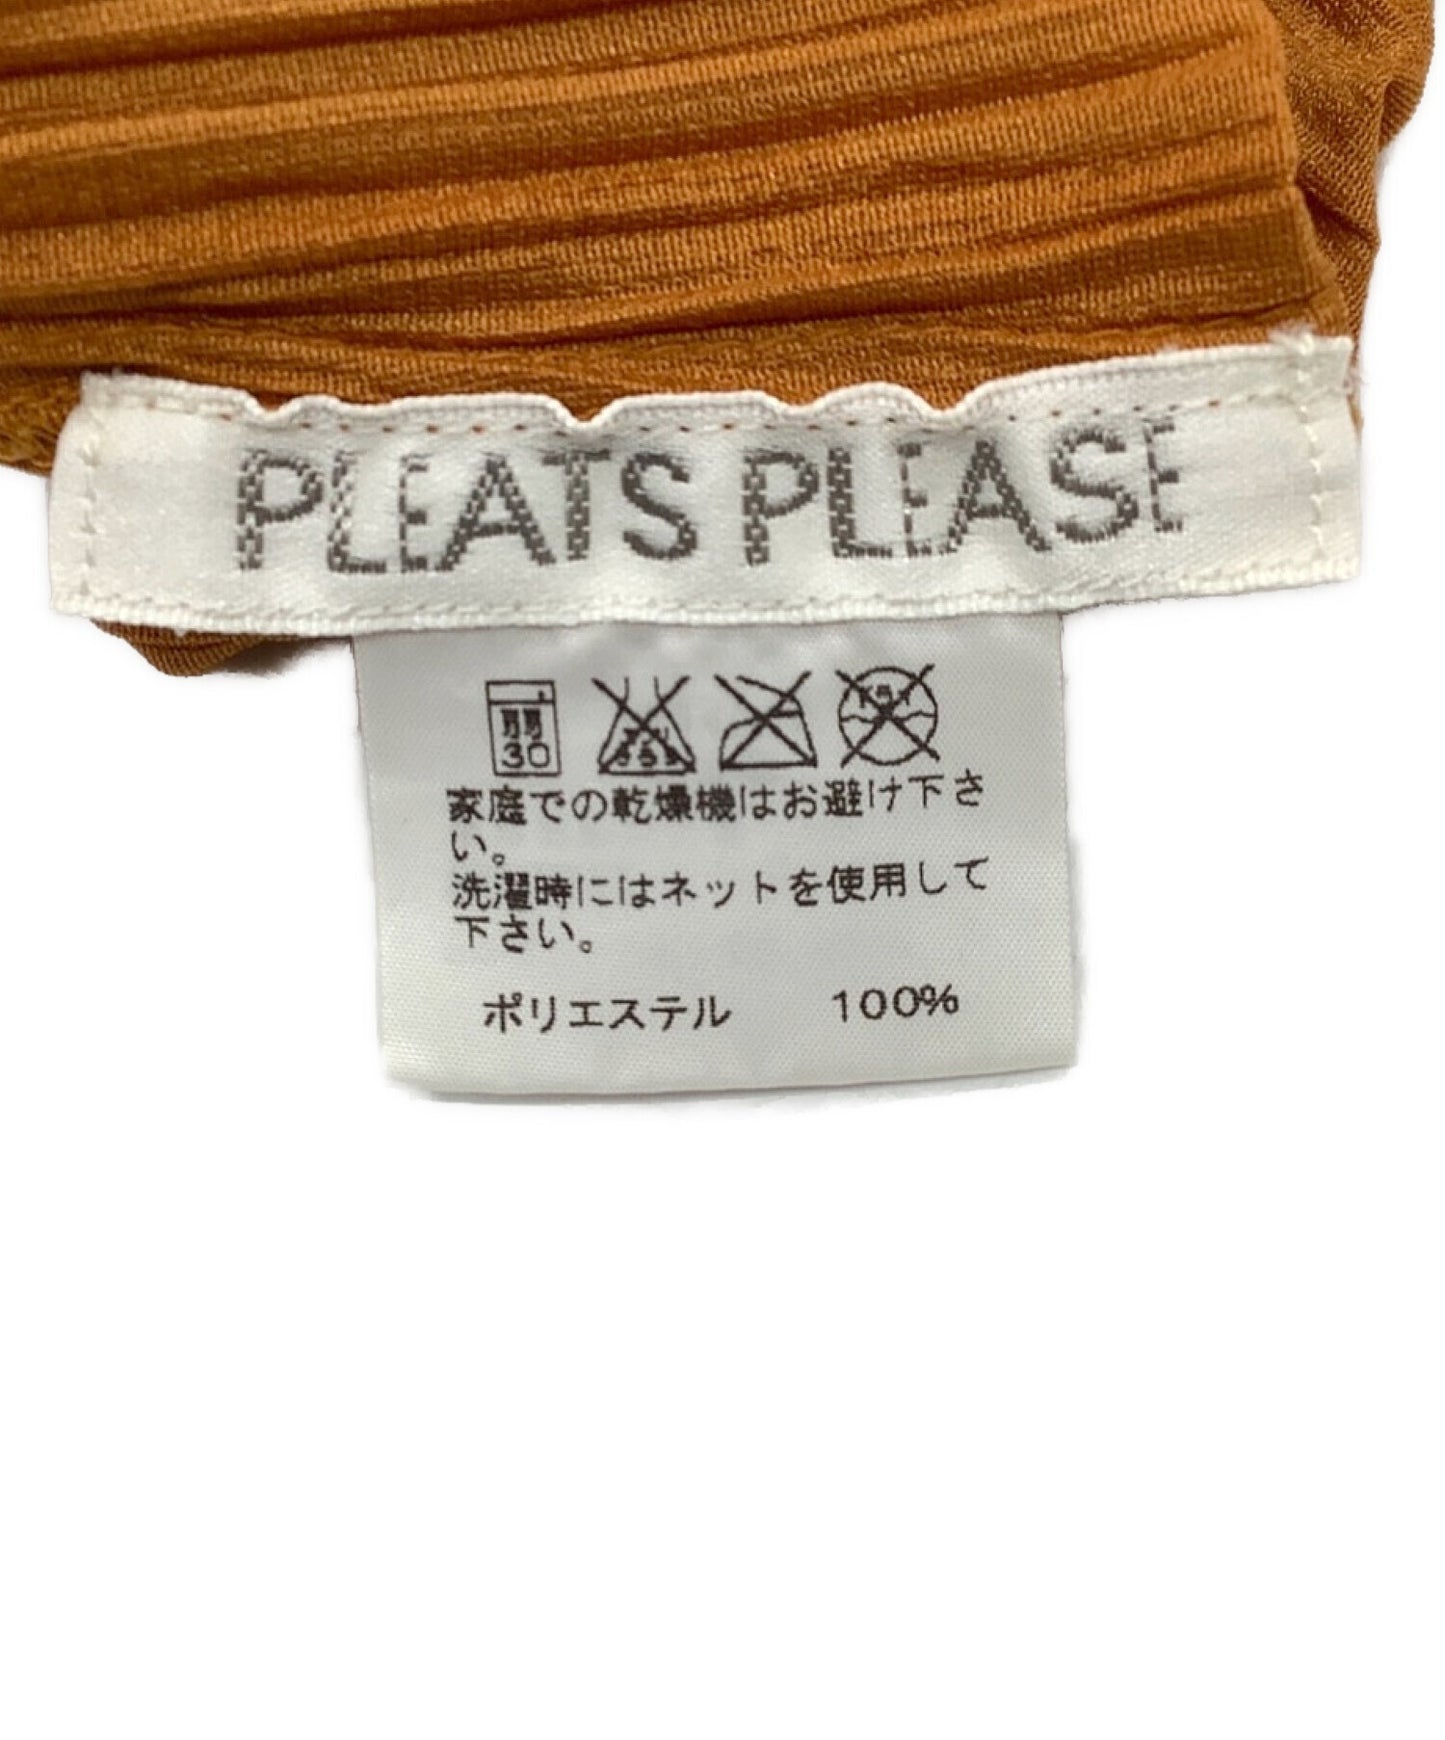 Pleats โปรดจีบเสื้อ pp91-jk145